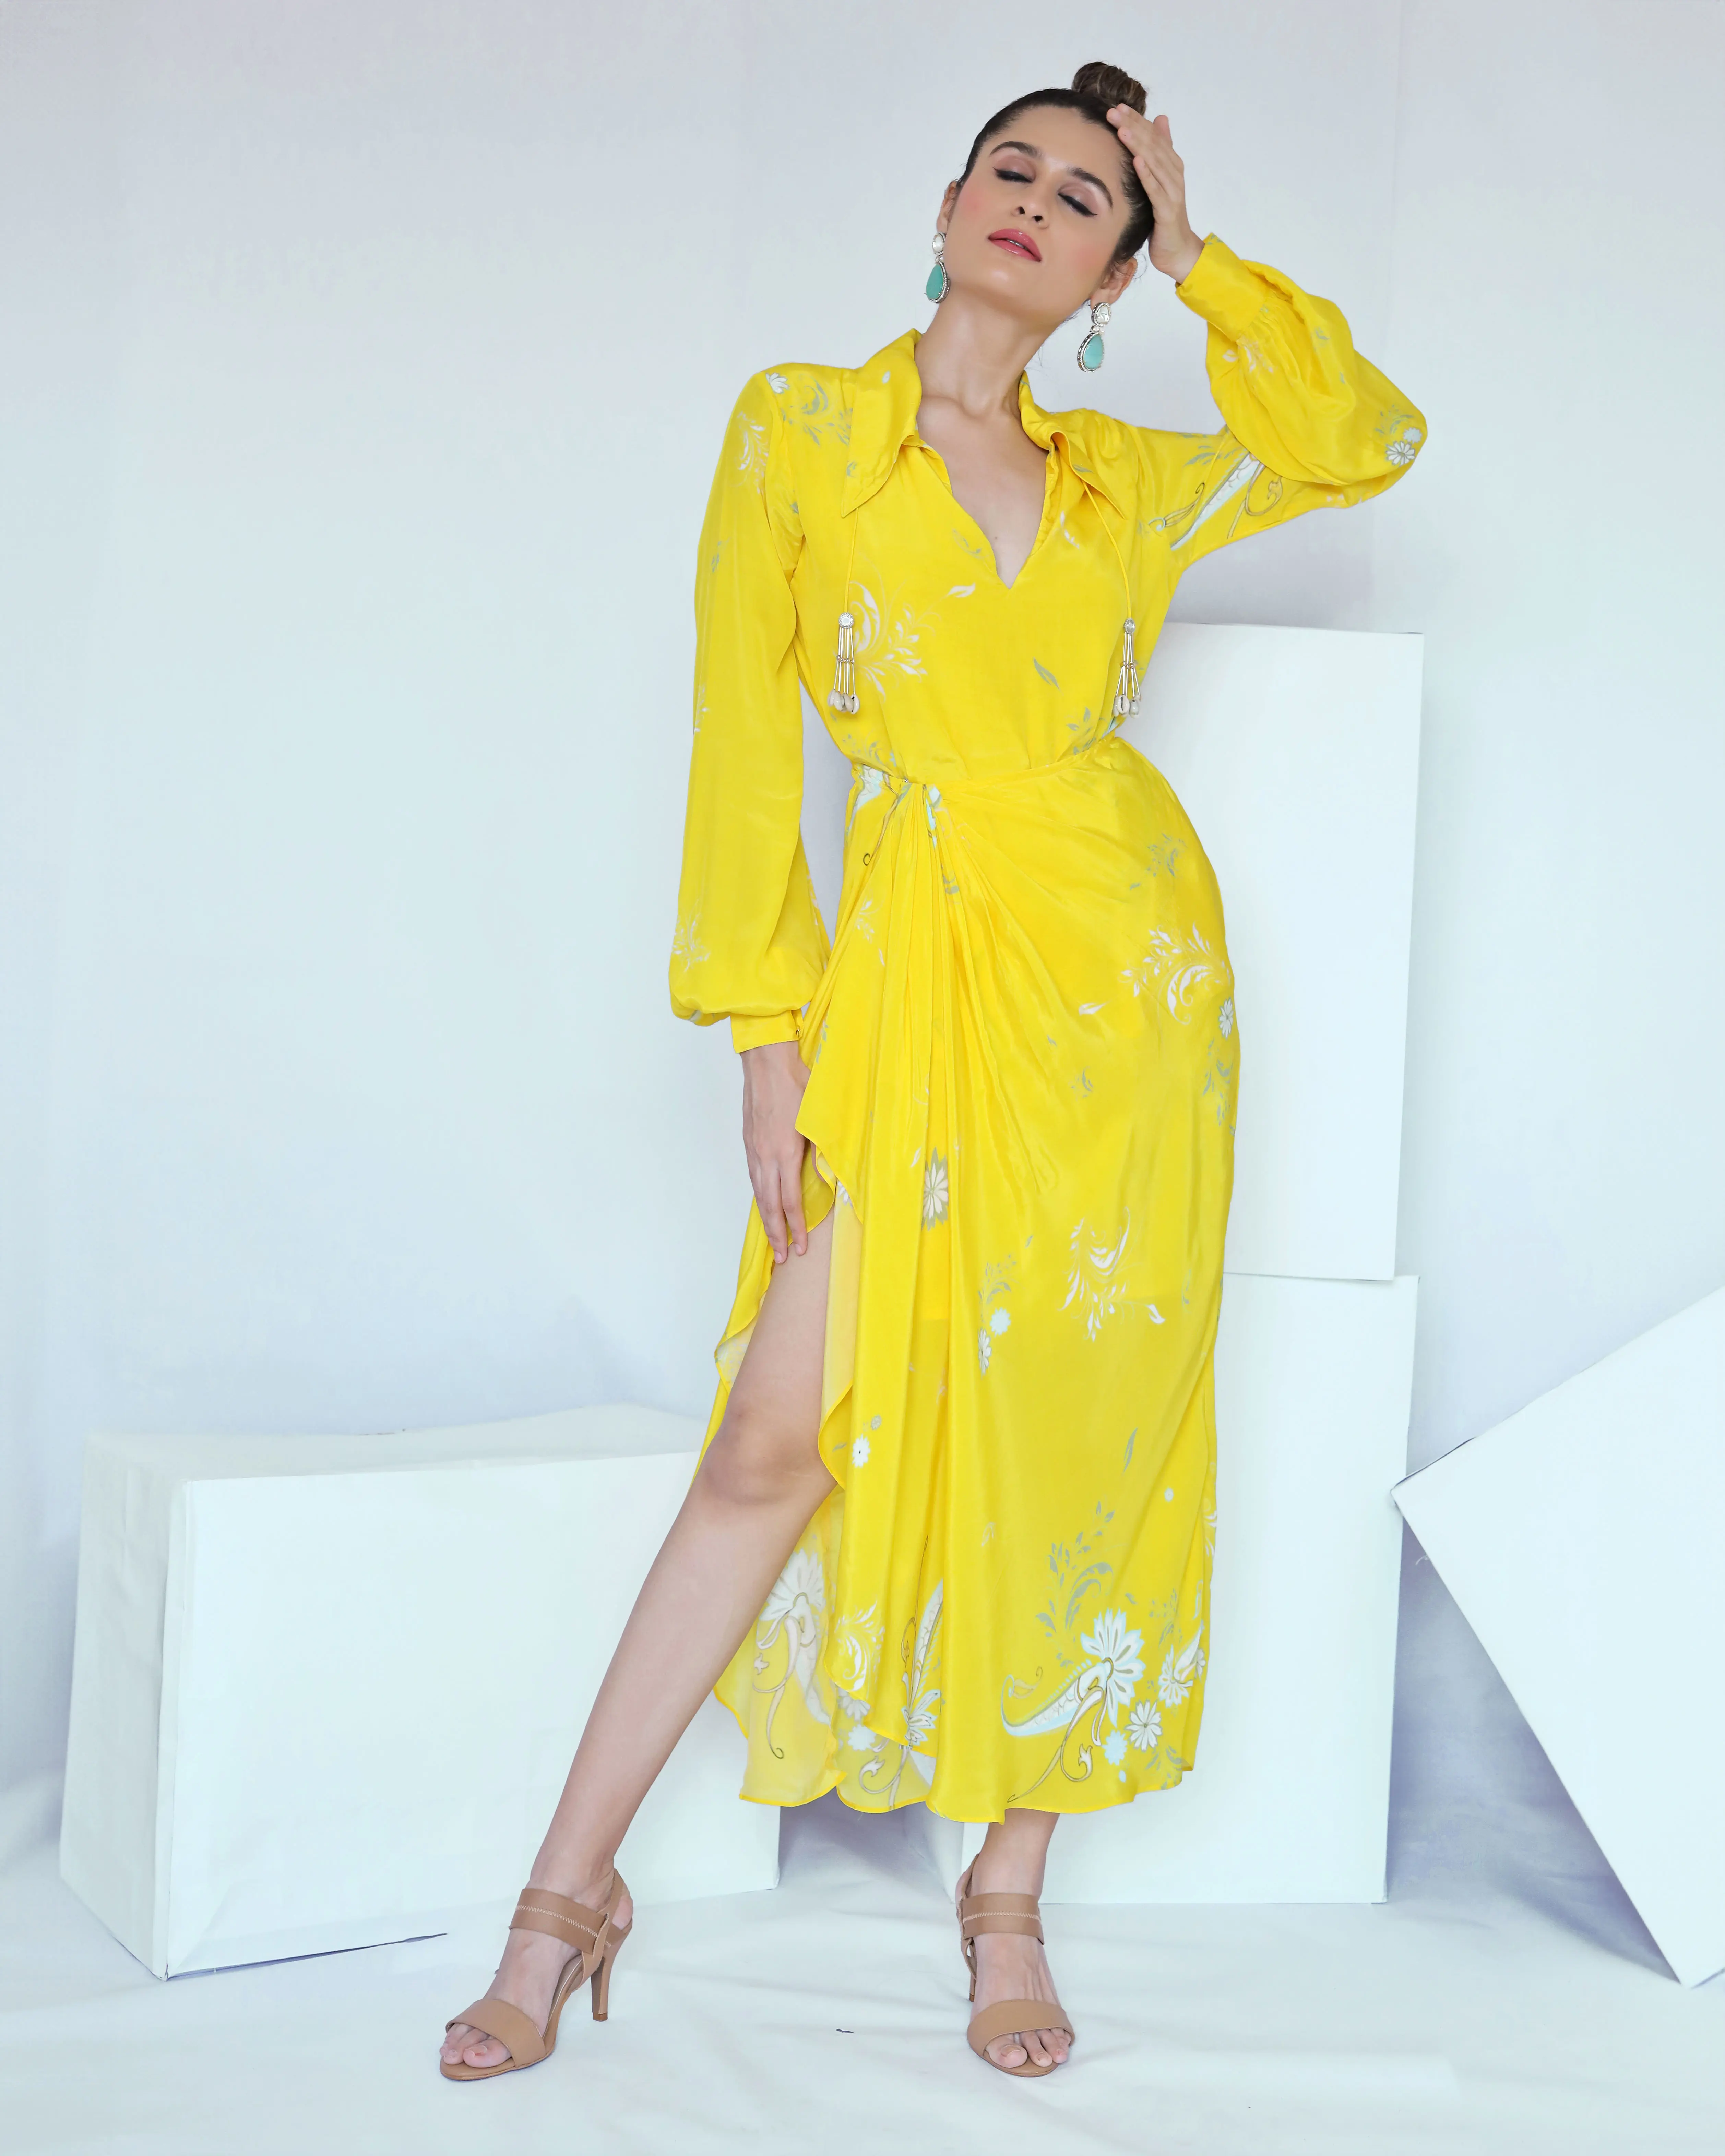 Yellow Paisley Print Wrap Dress